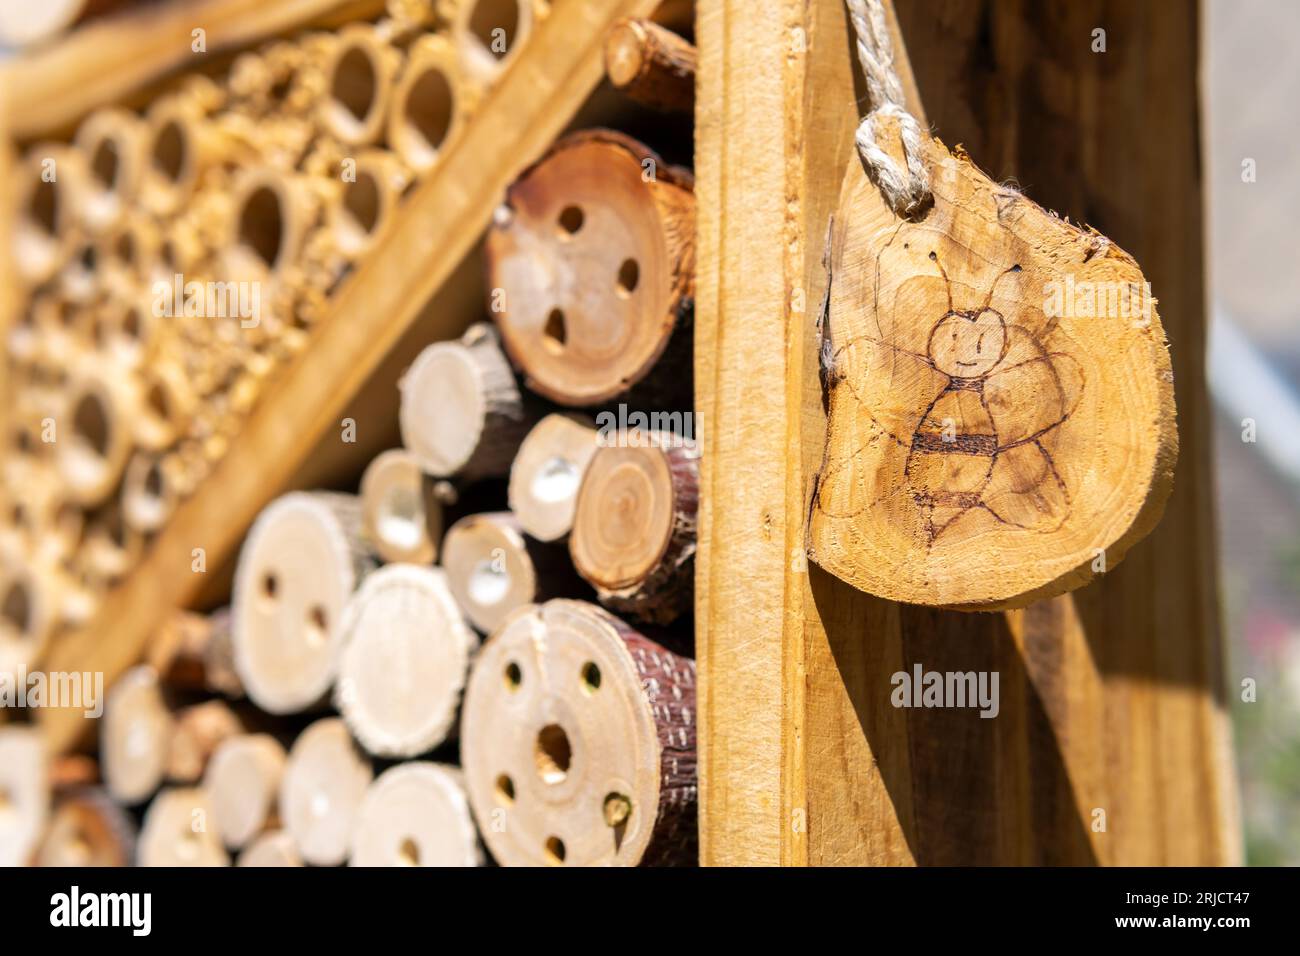 Primo piano della piccola etichetta dell'hotel Nsect con disegno delle api Foto Stock